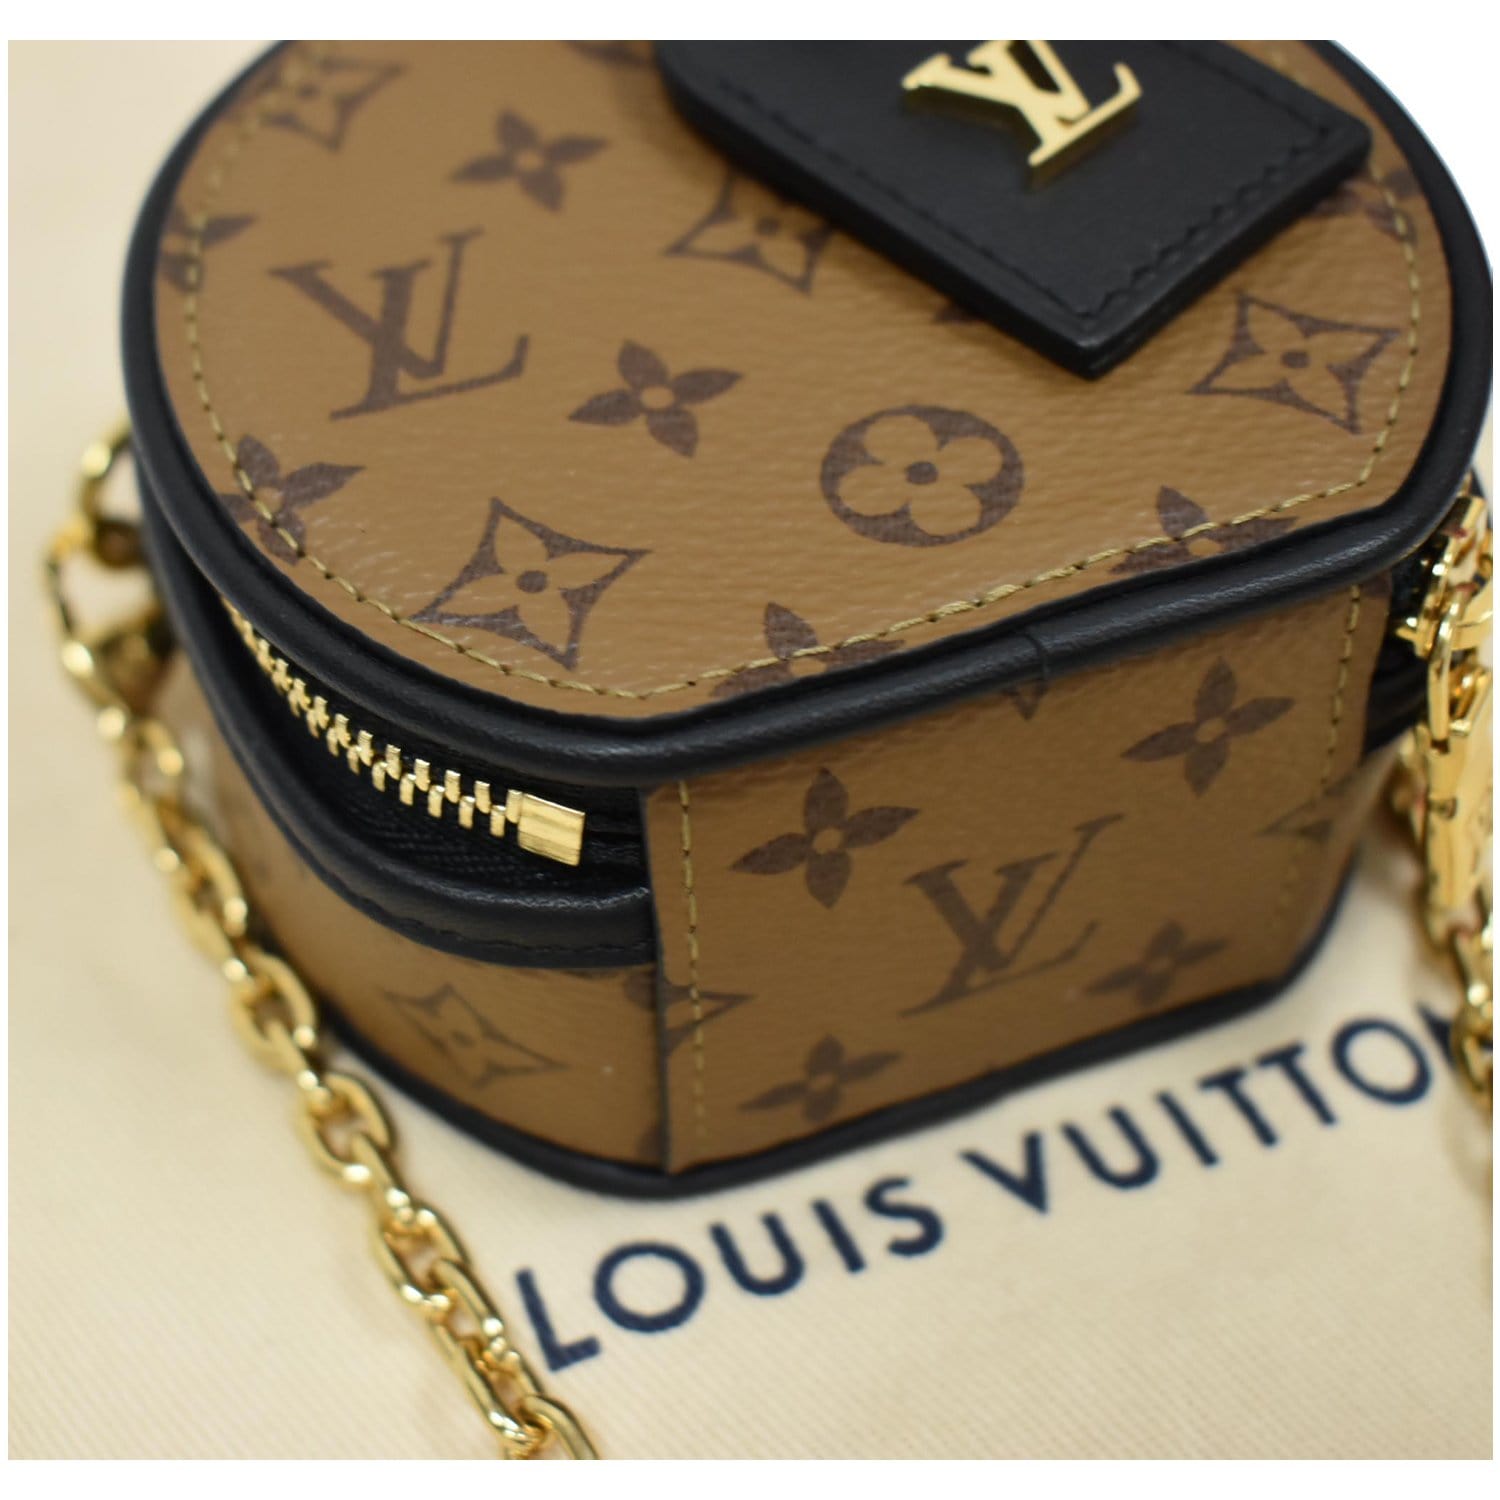 Airpods Case Louis Vuitton 